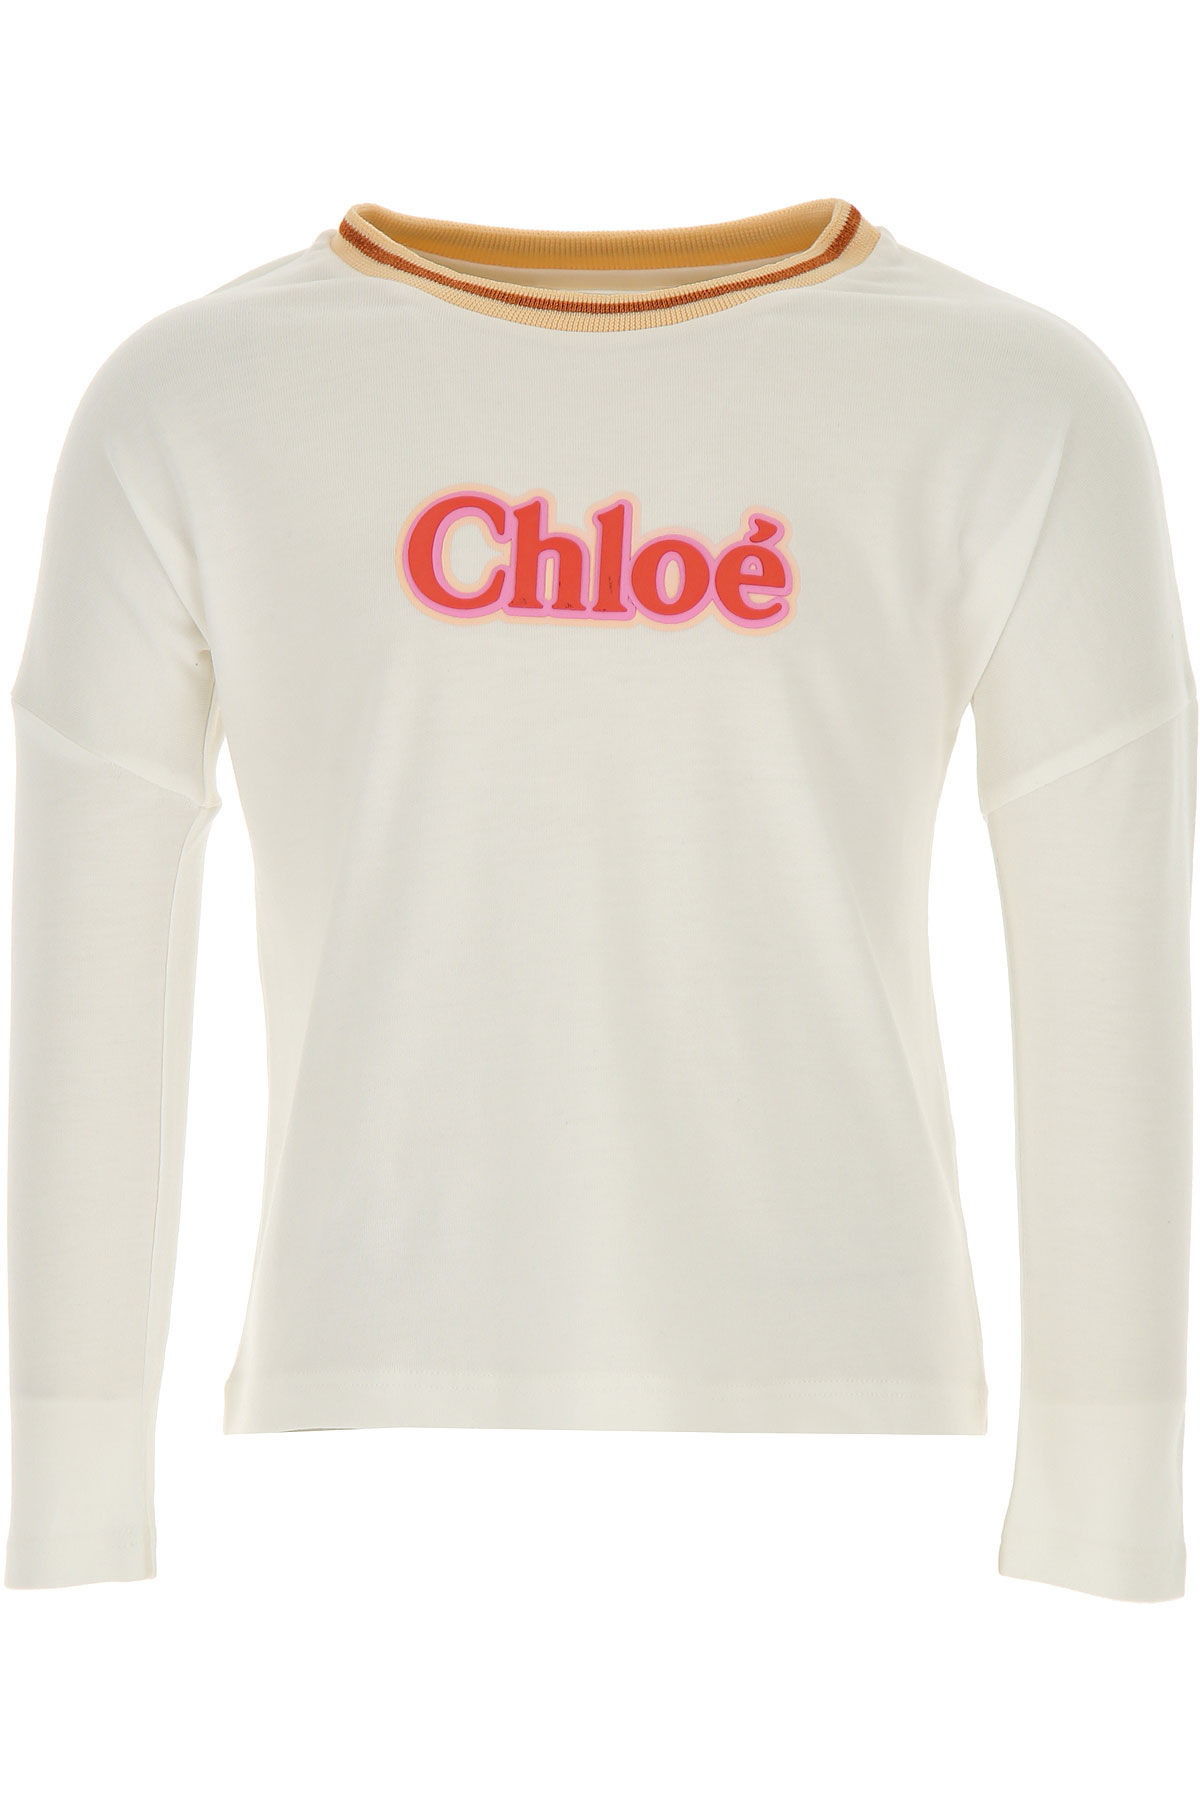 Chloe Kinder T-Shirt für Mädchen Günstig im Sale, Creme, Baumwolle, 2017, 14Y 8Y